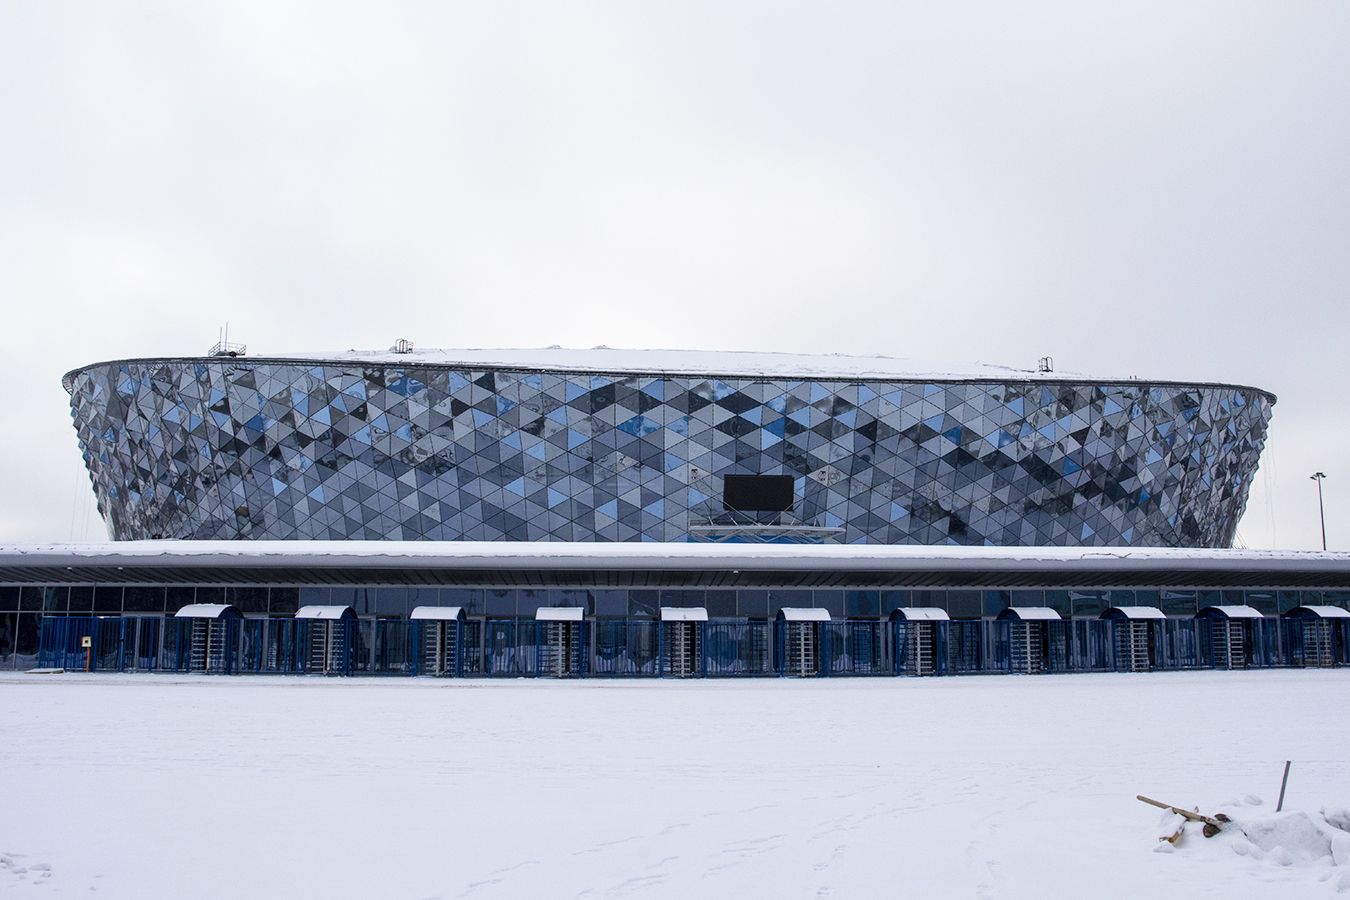 Скоро здесь будет играть «Сибирь». Репортаж с новой хоккейной арены в Новосибирске